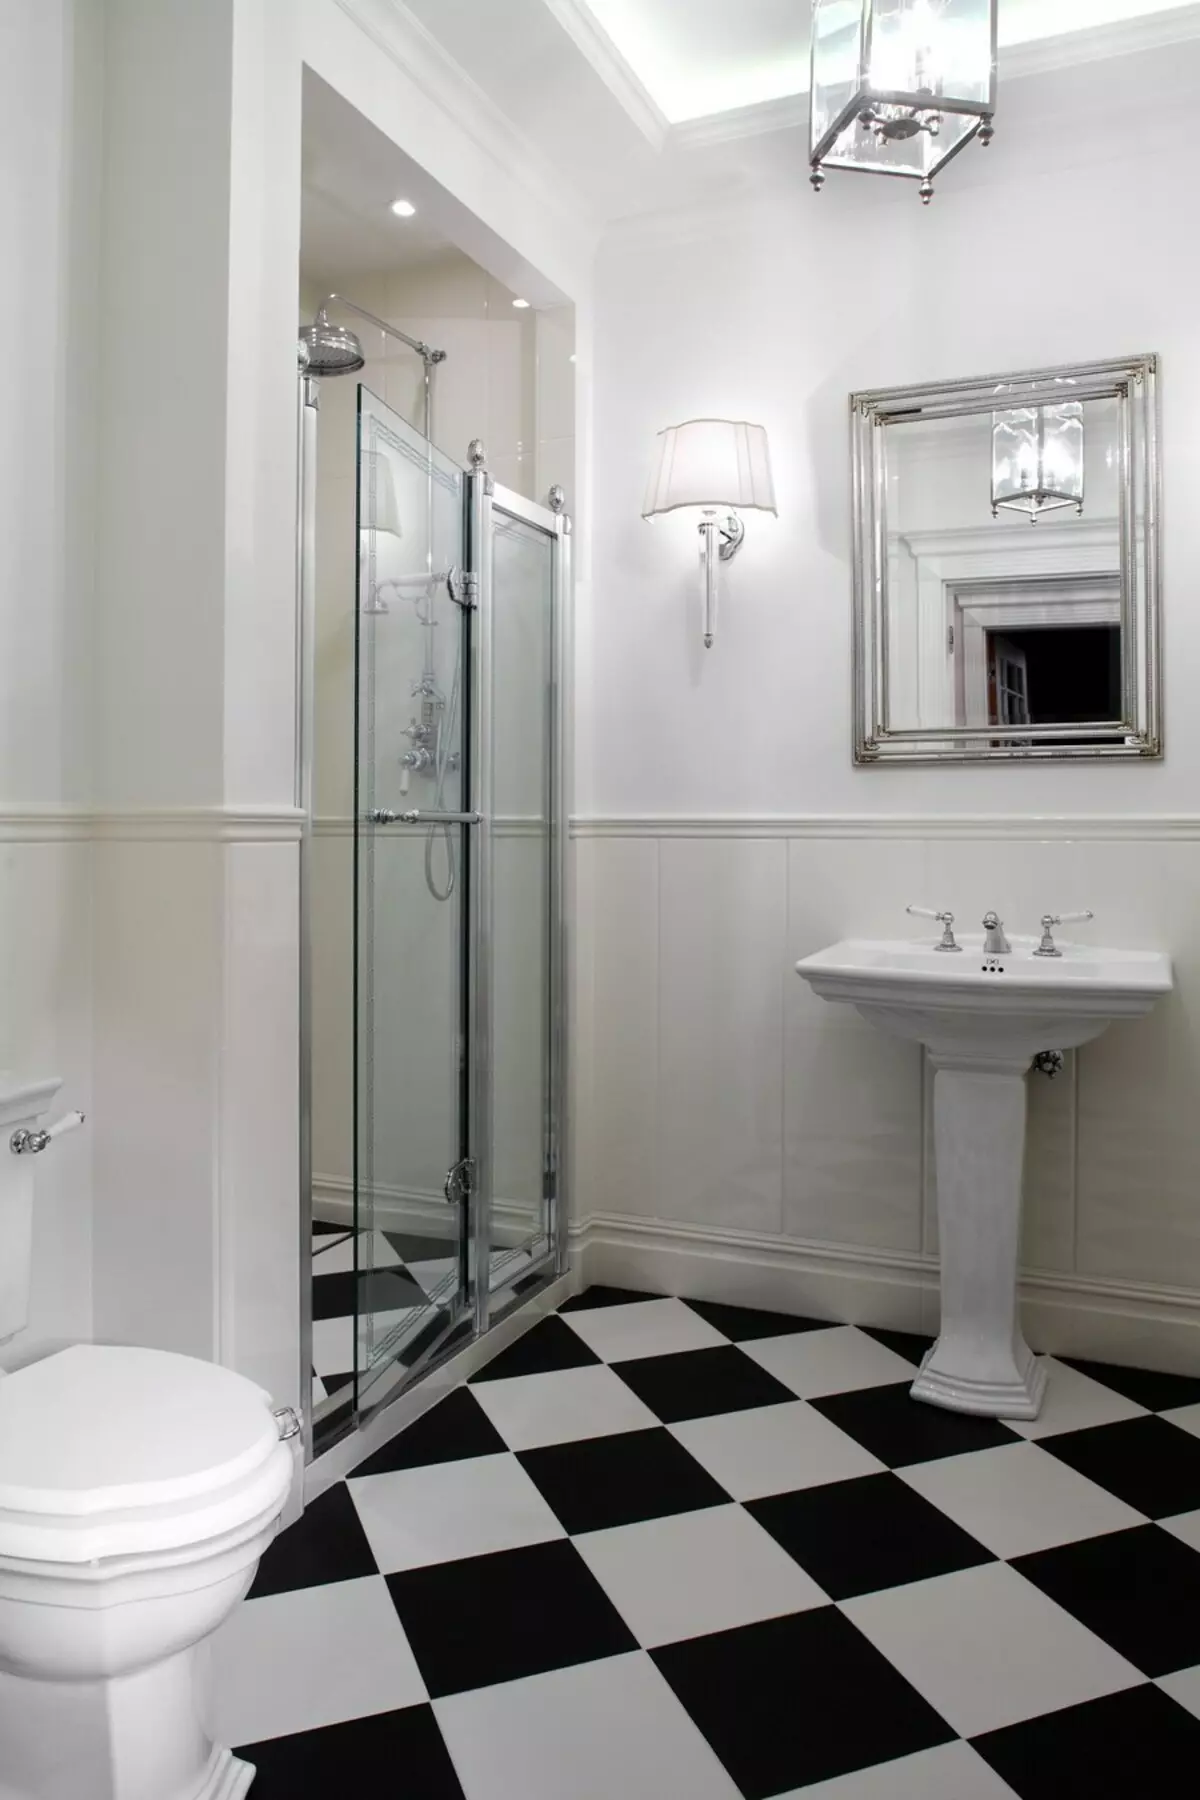 浴室沒有淋浴的淋浴（57張照片）：私人住宅和公寓內的浴室的設計和裝飾有靈魂場景 21400_52